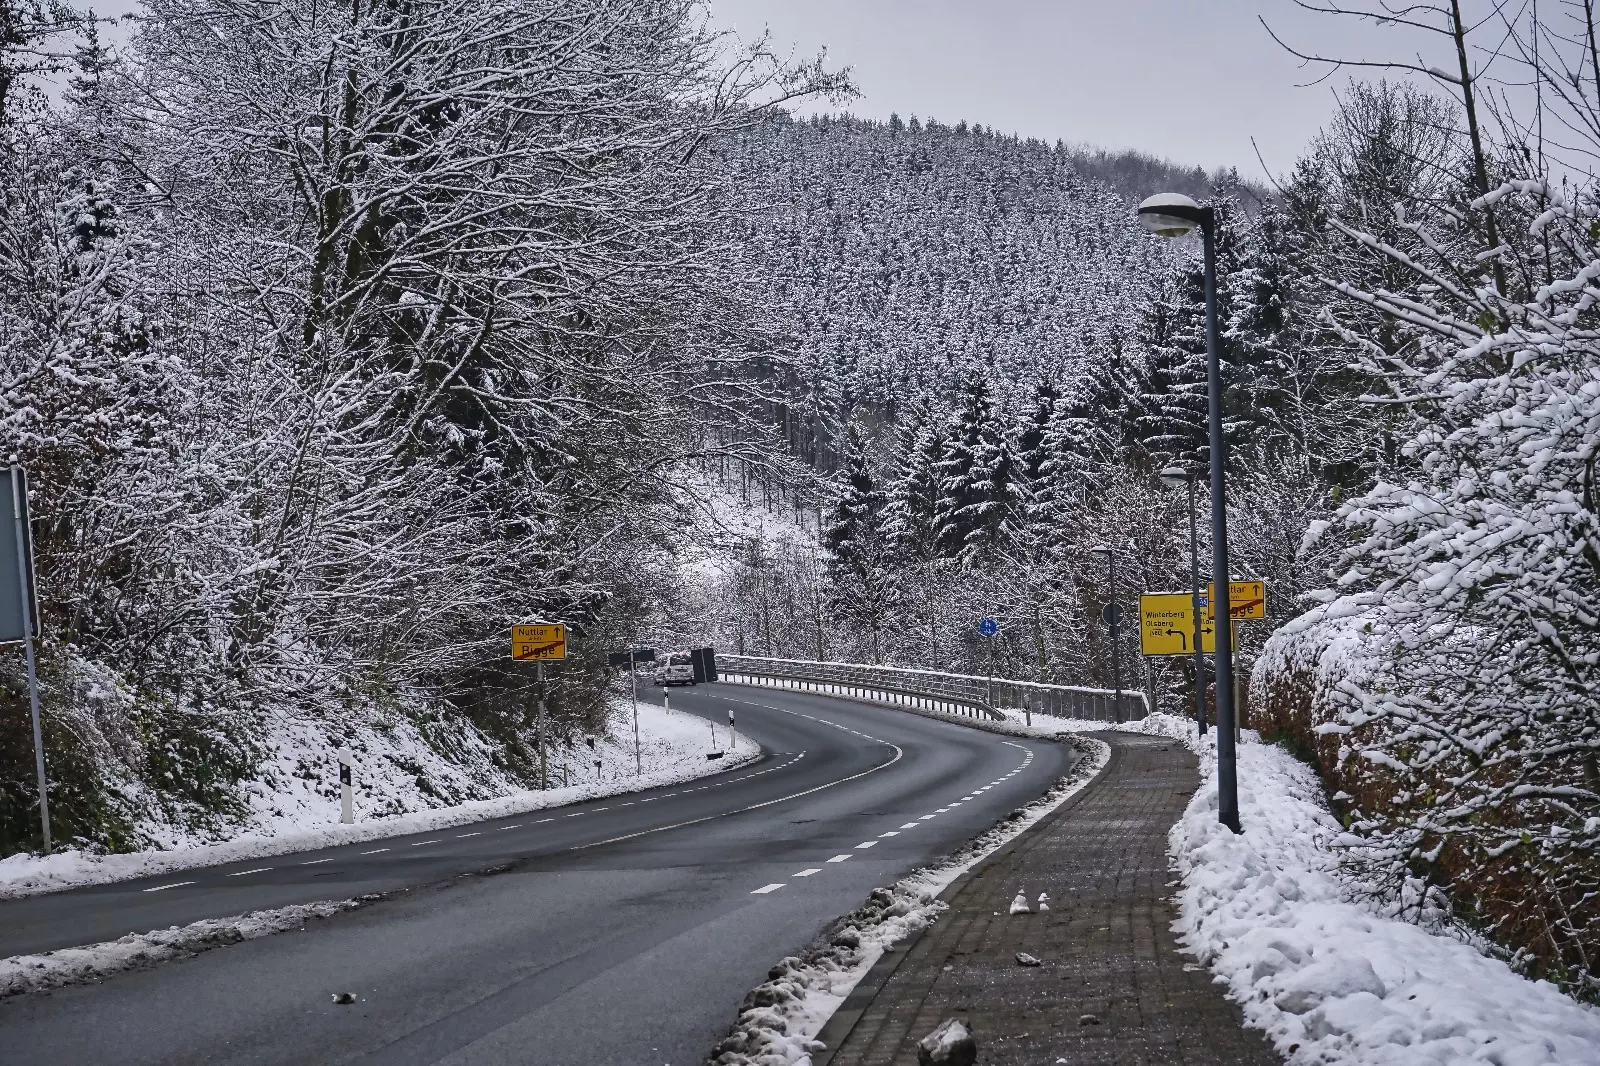 Schnee am Kreisverkehr im Westen von Bigge, hier die Richtung zum Tunnel bzw. A46. Foto: Just